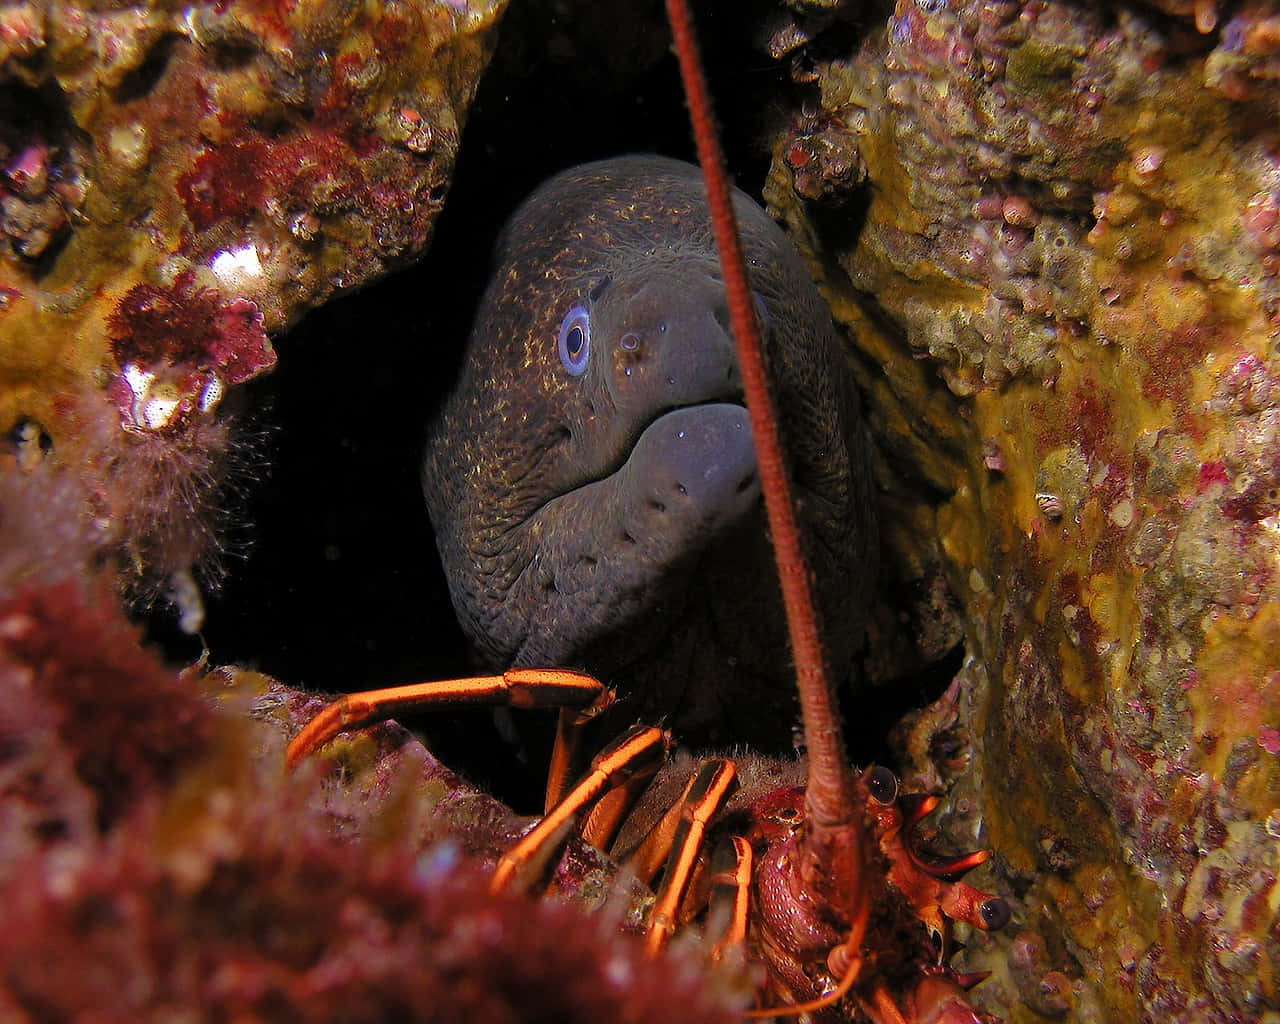 Majestic Moray Eel Lurking In Its Aquatic Habitat Wallpaper